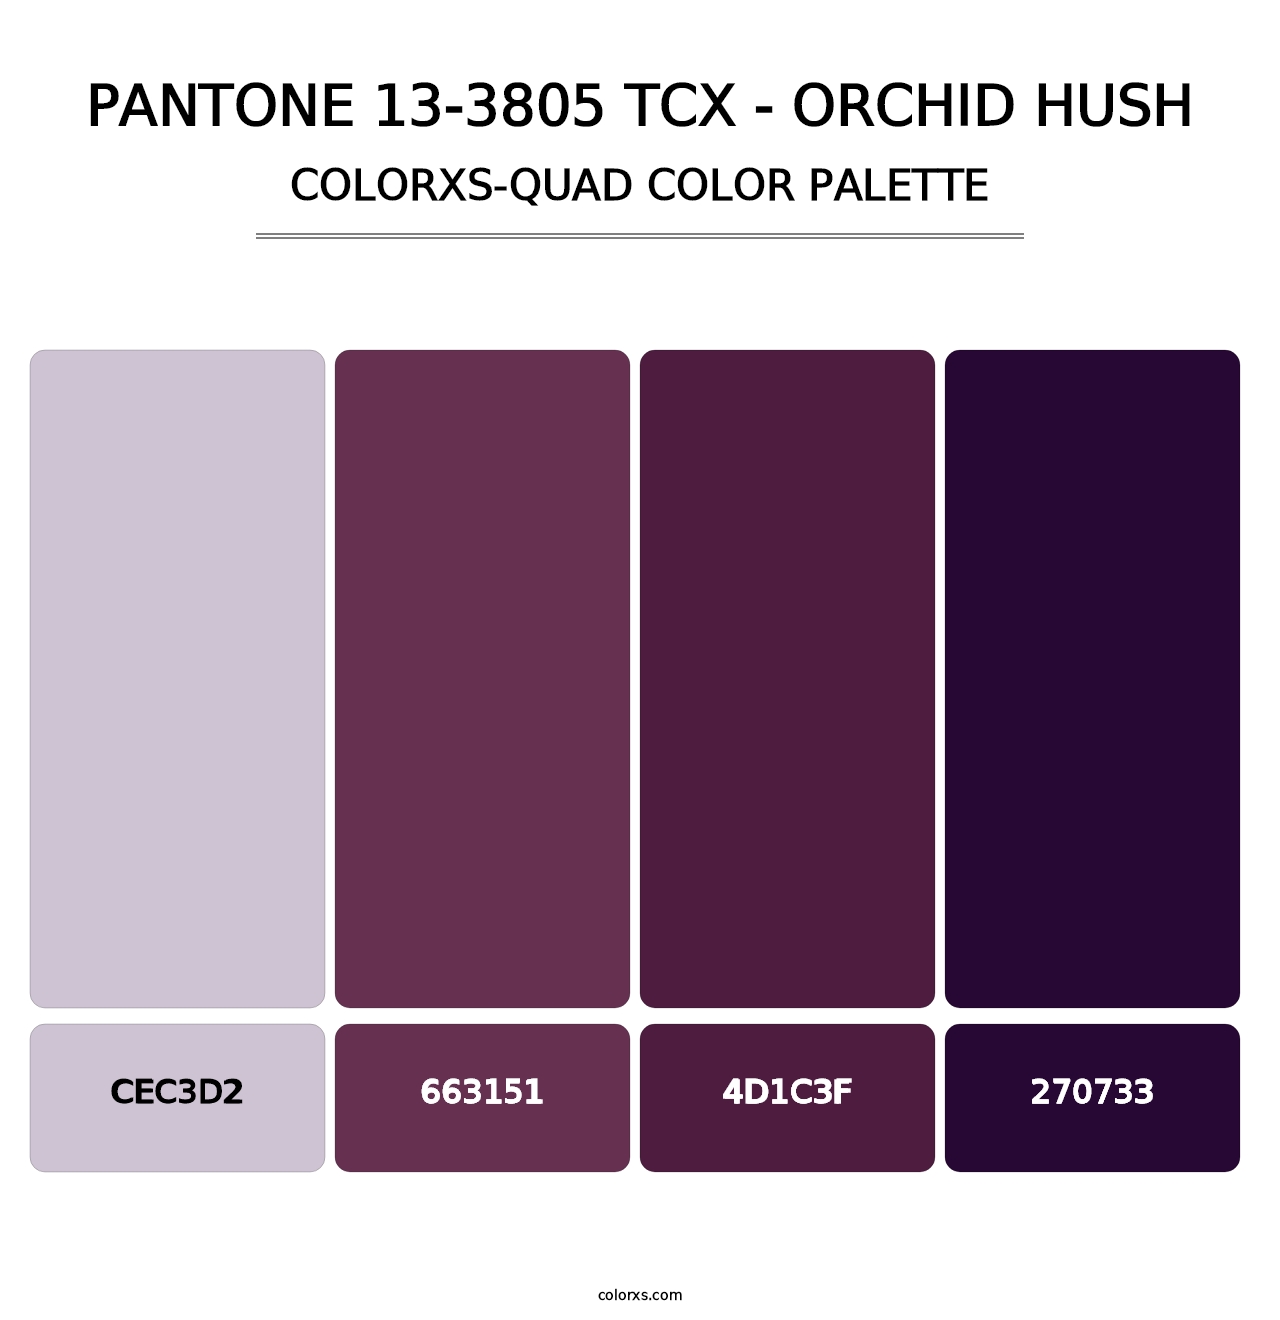 PANTONE 13-3805 TCX - Orchid Hush - Colorxs Quad Palette